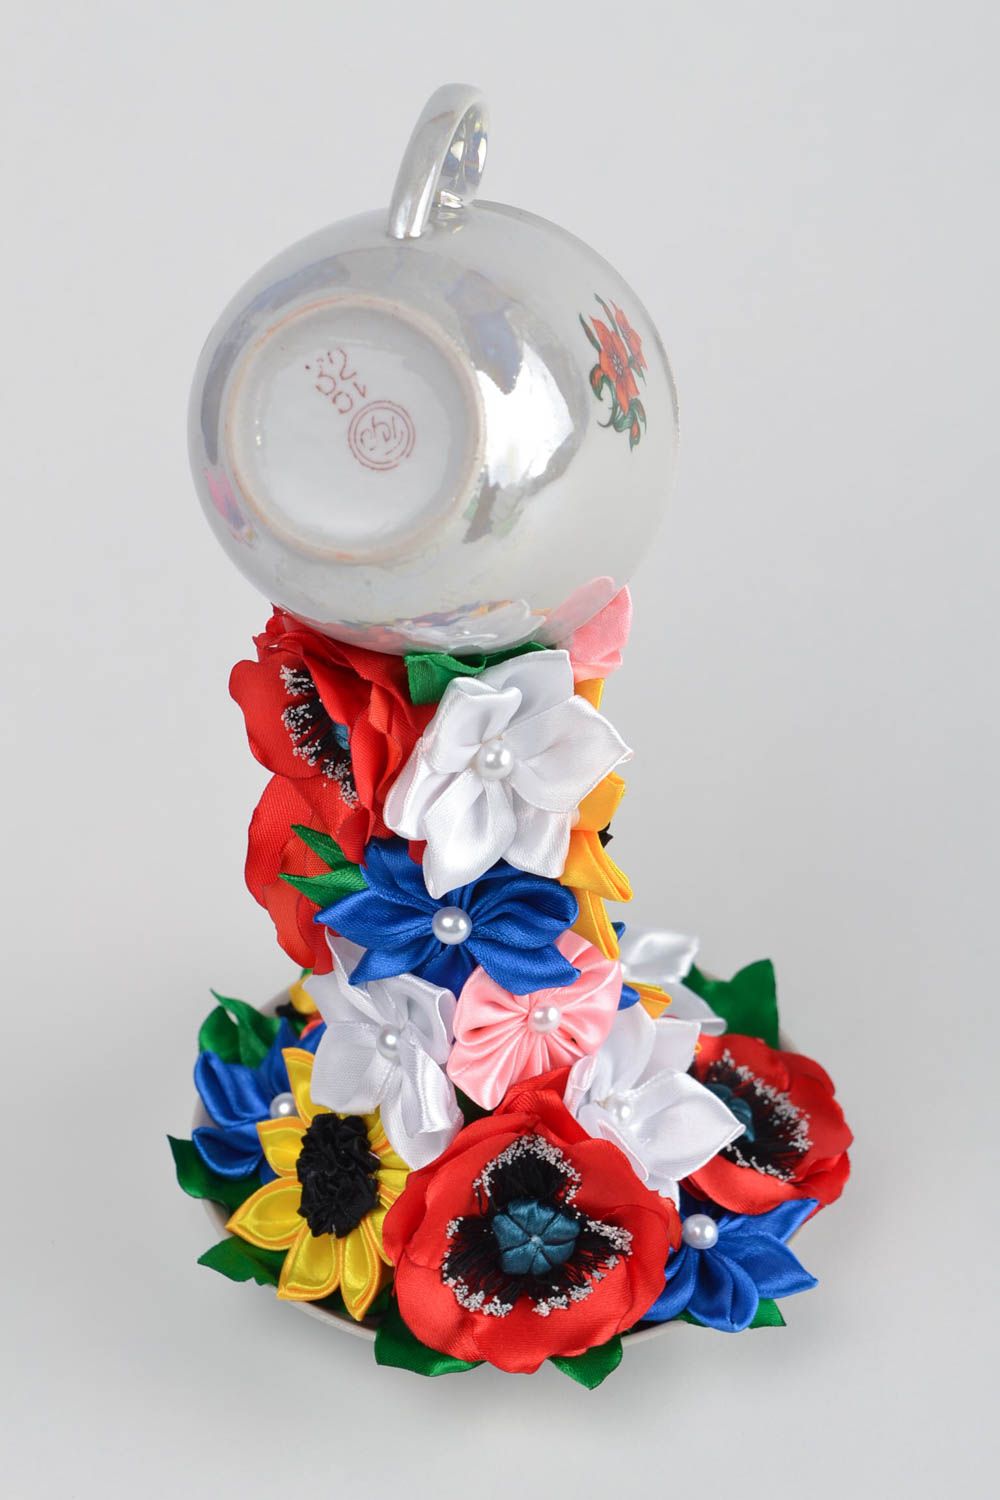 Handmade Topiary Blumen aus atlas Bändern für Interieur Dekor künstlerisch schön foto 5